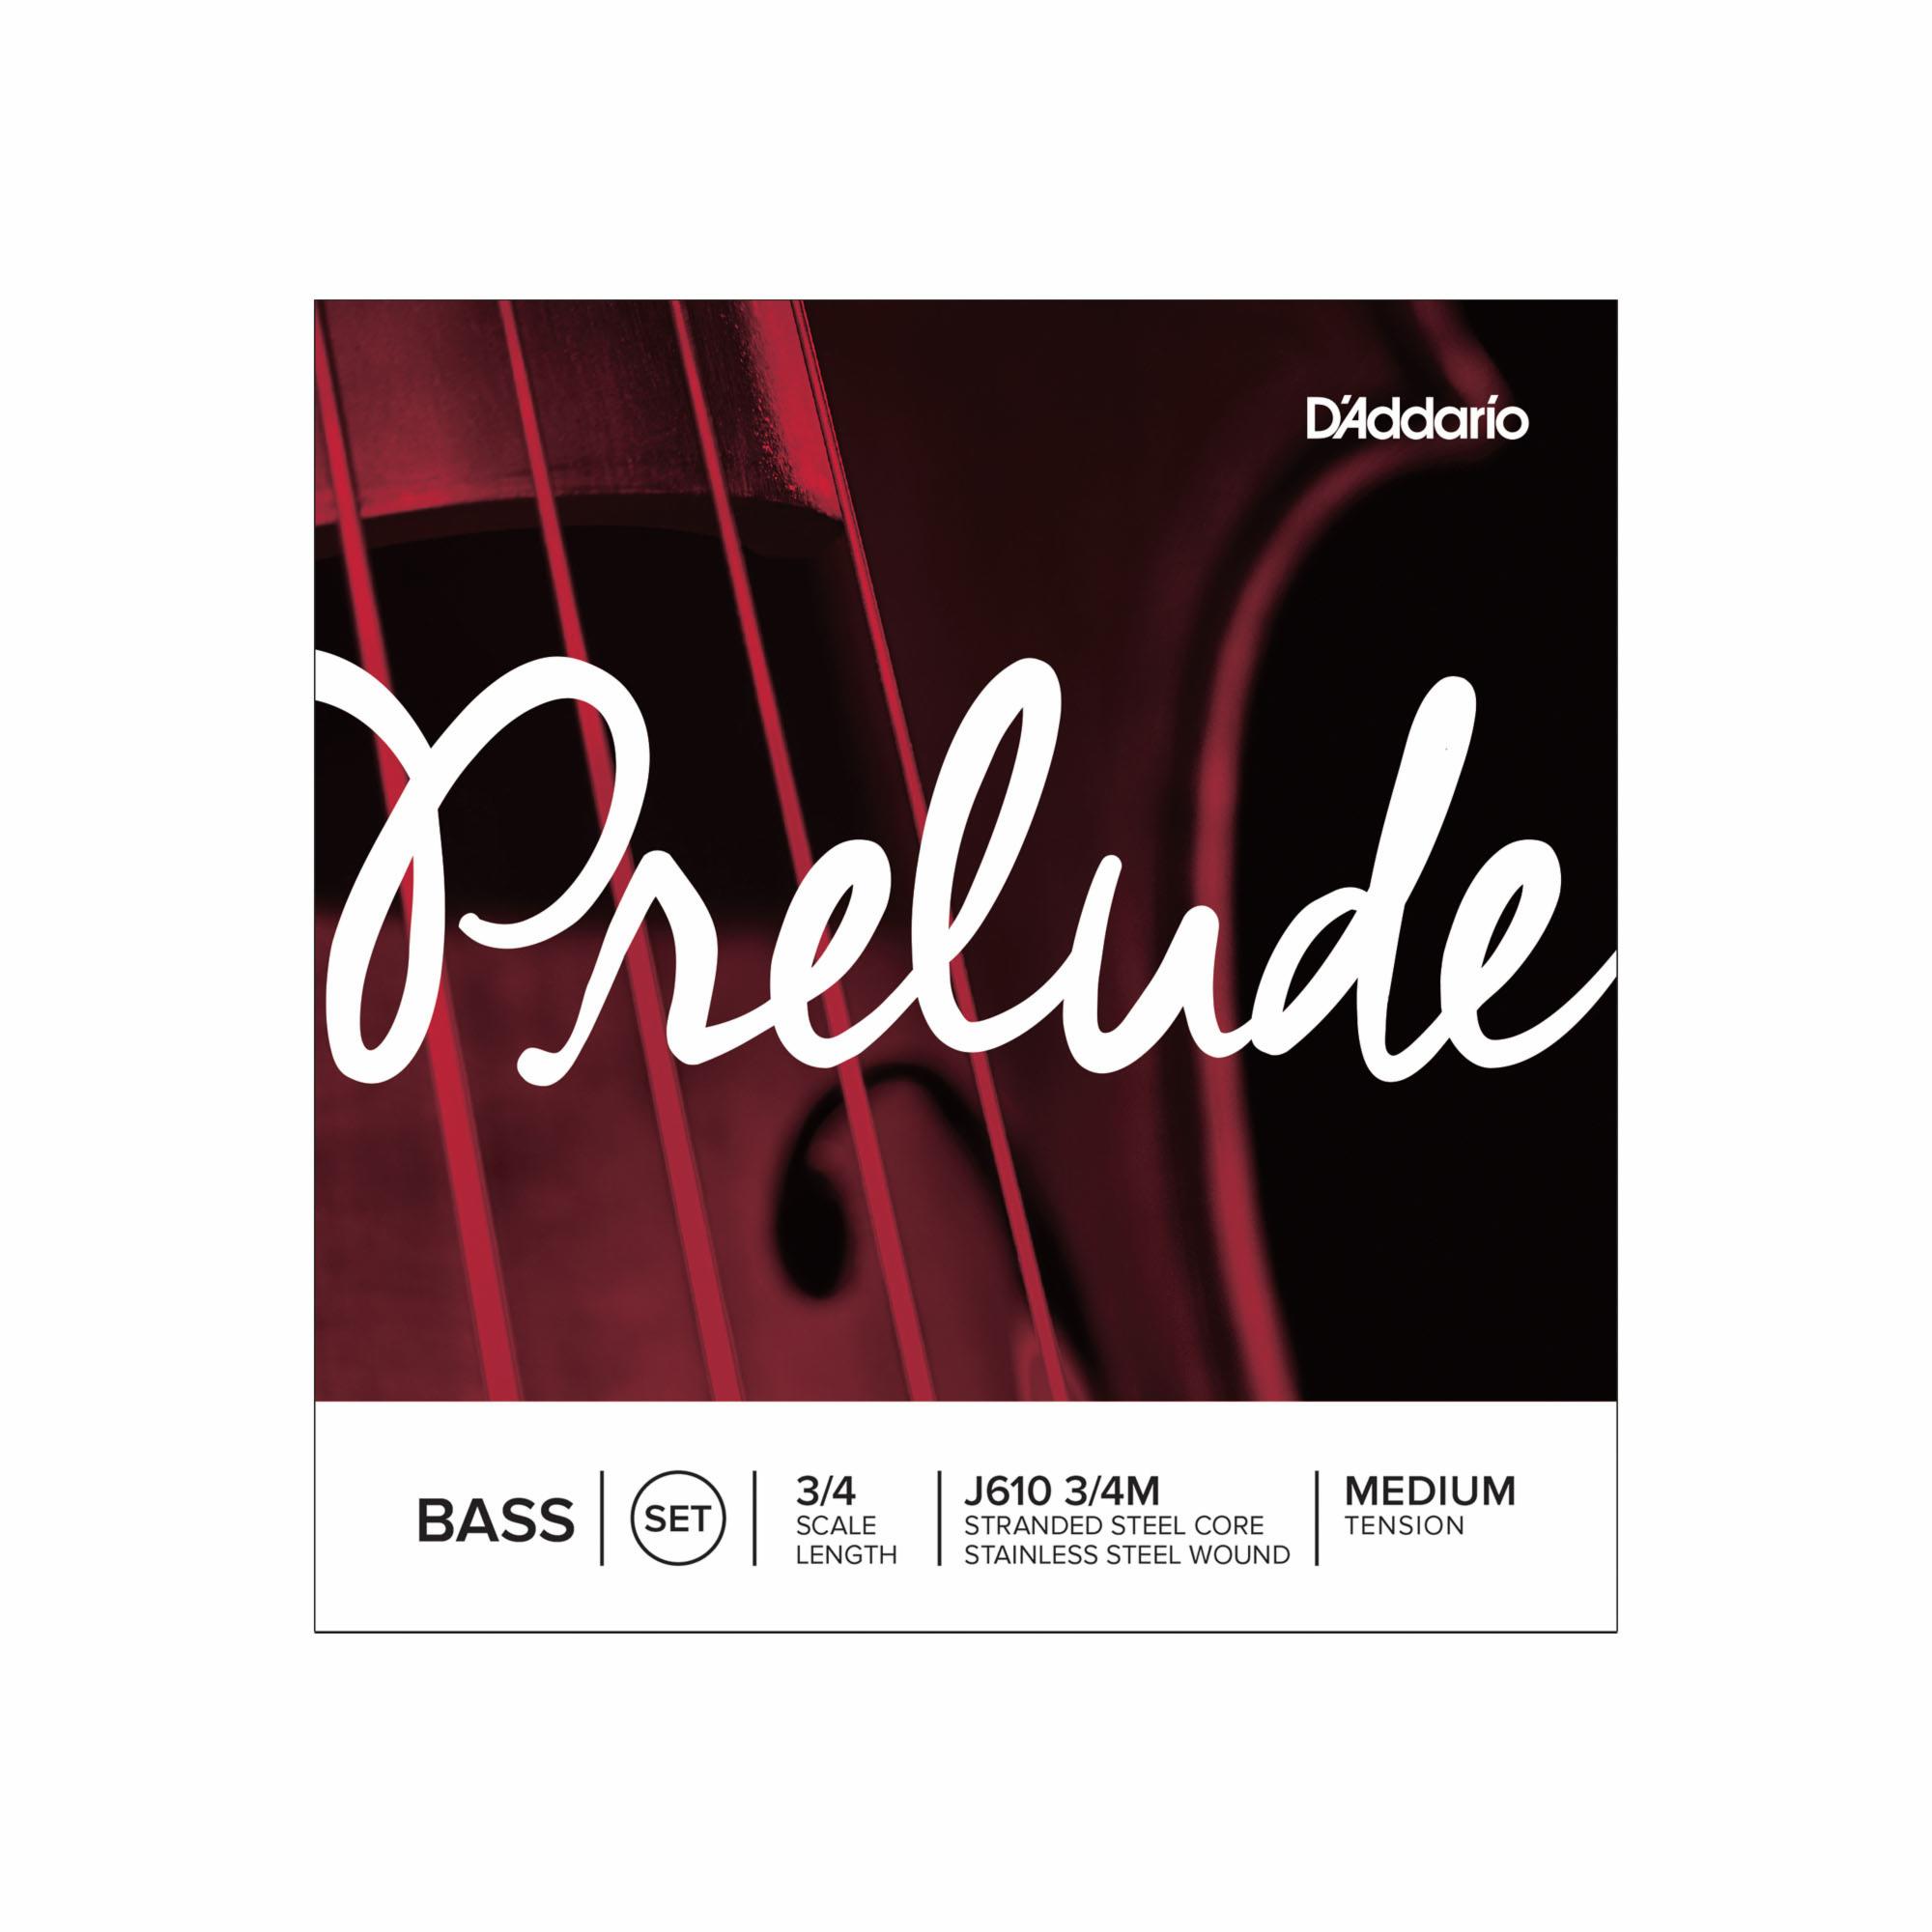 D'Addario Prelude Bass Strings